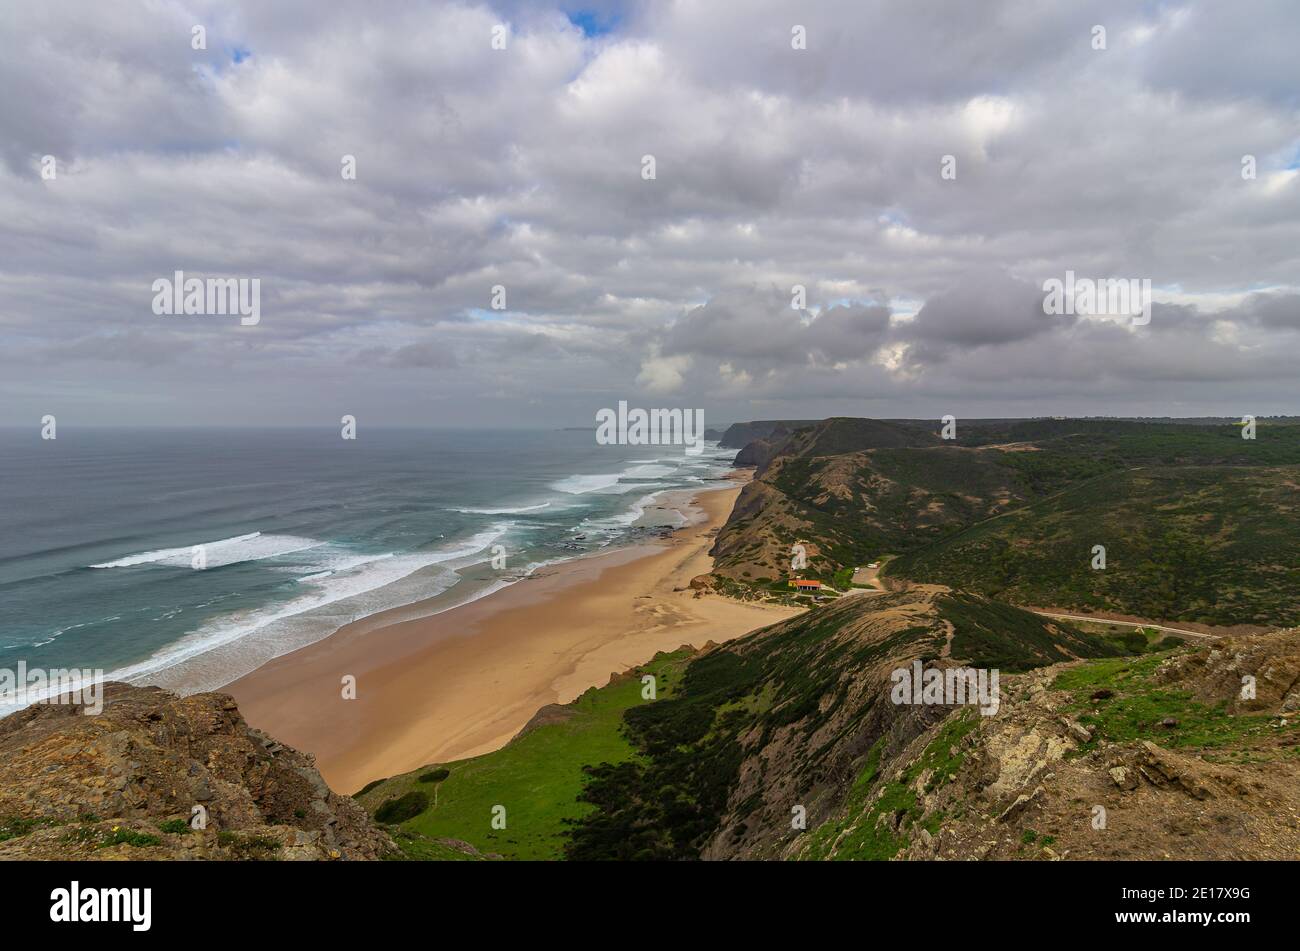 Scenic view of the Cordoama Beach near Vila do Bispo, in Algarve, Portugal Stock Photo